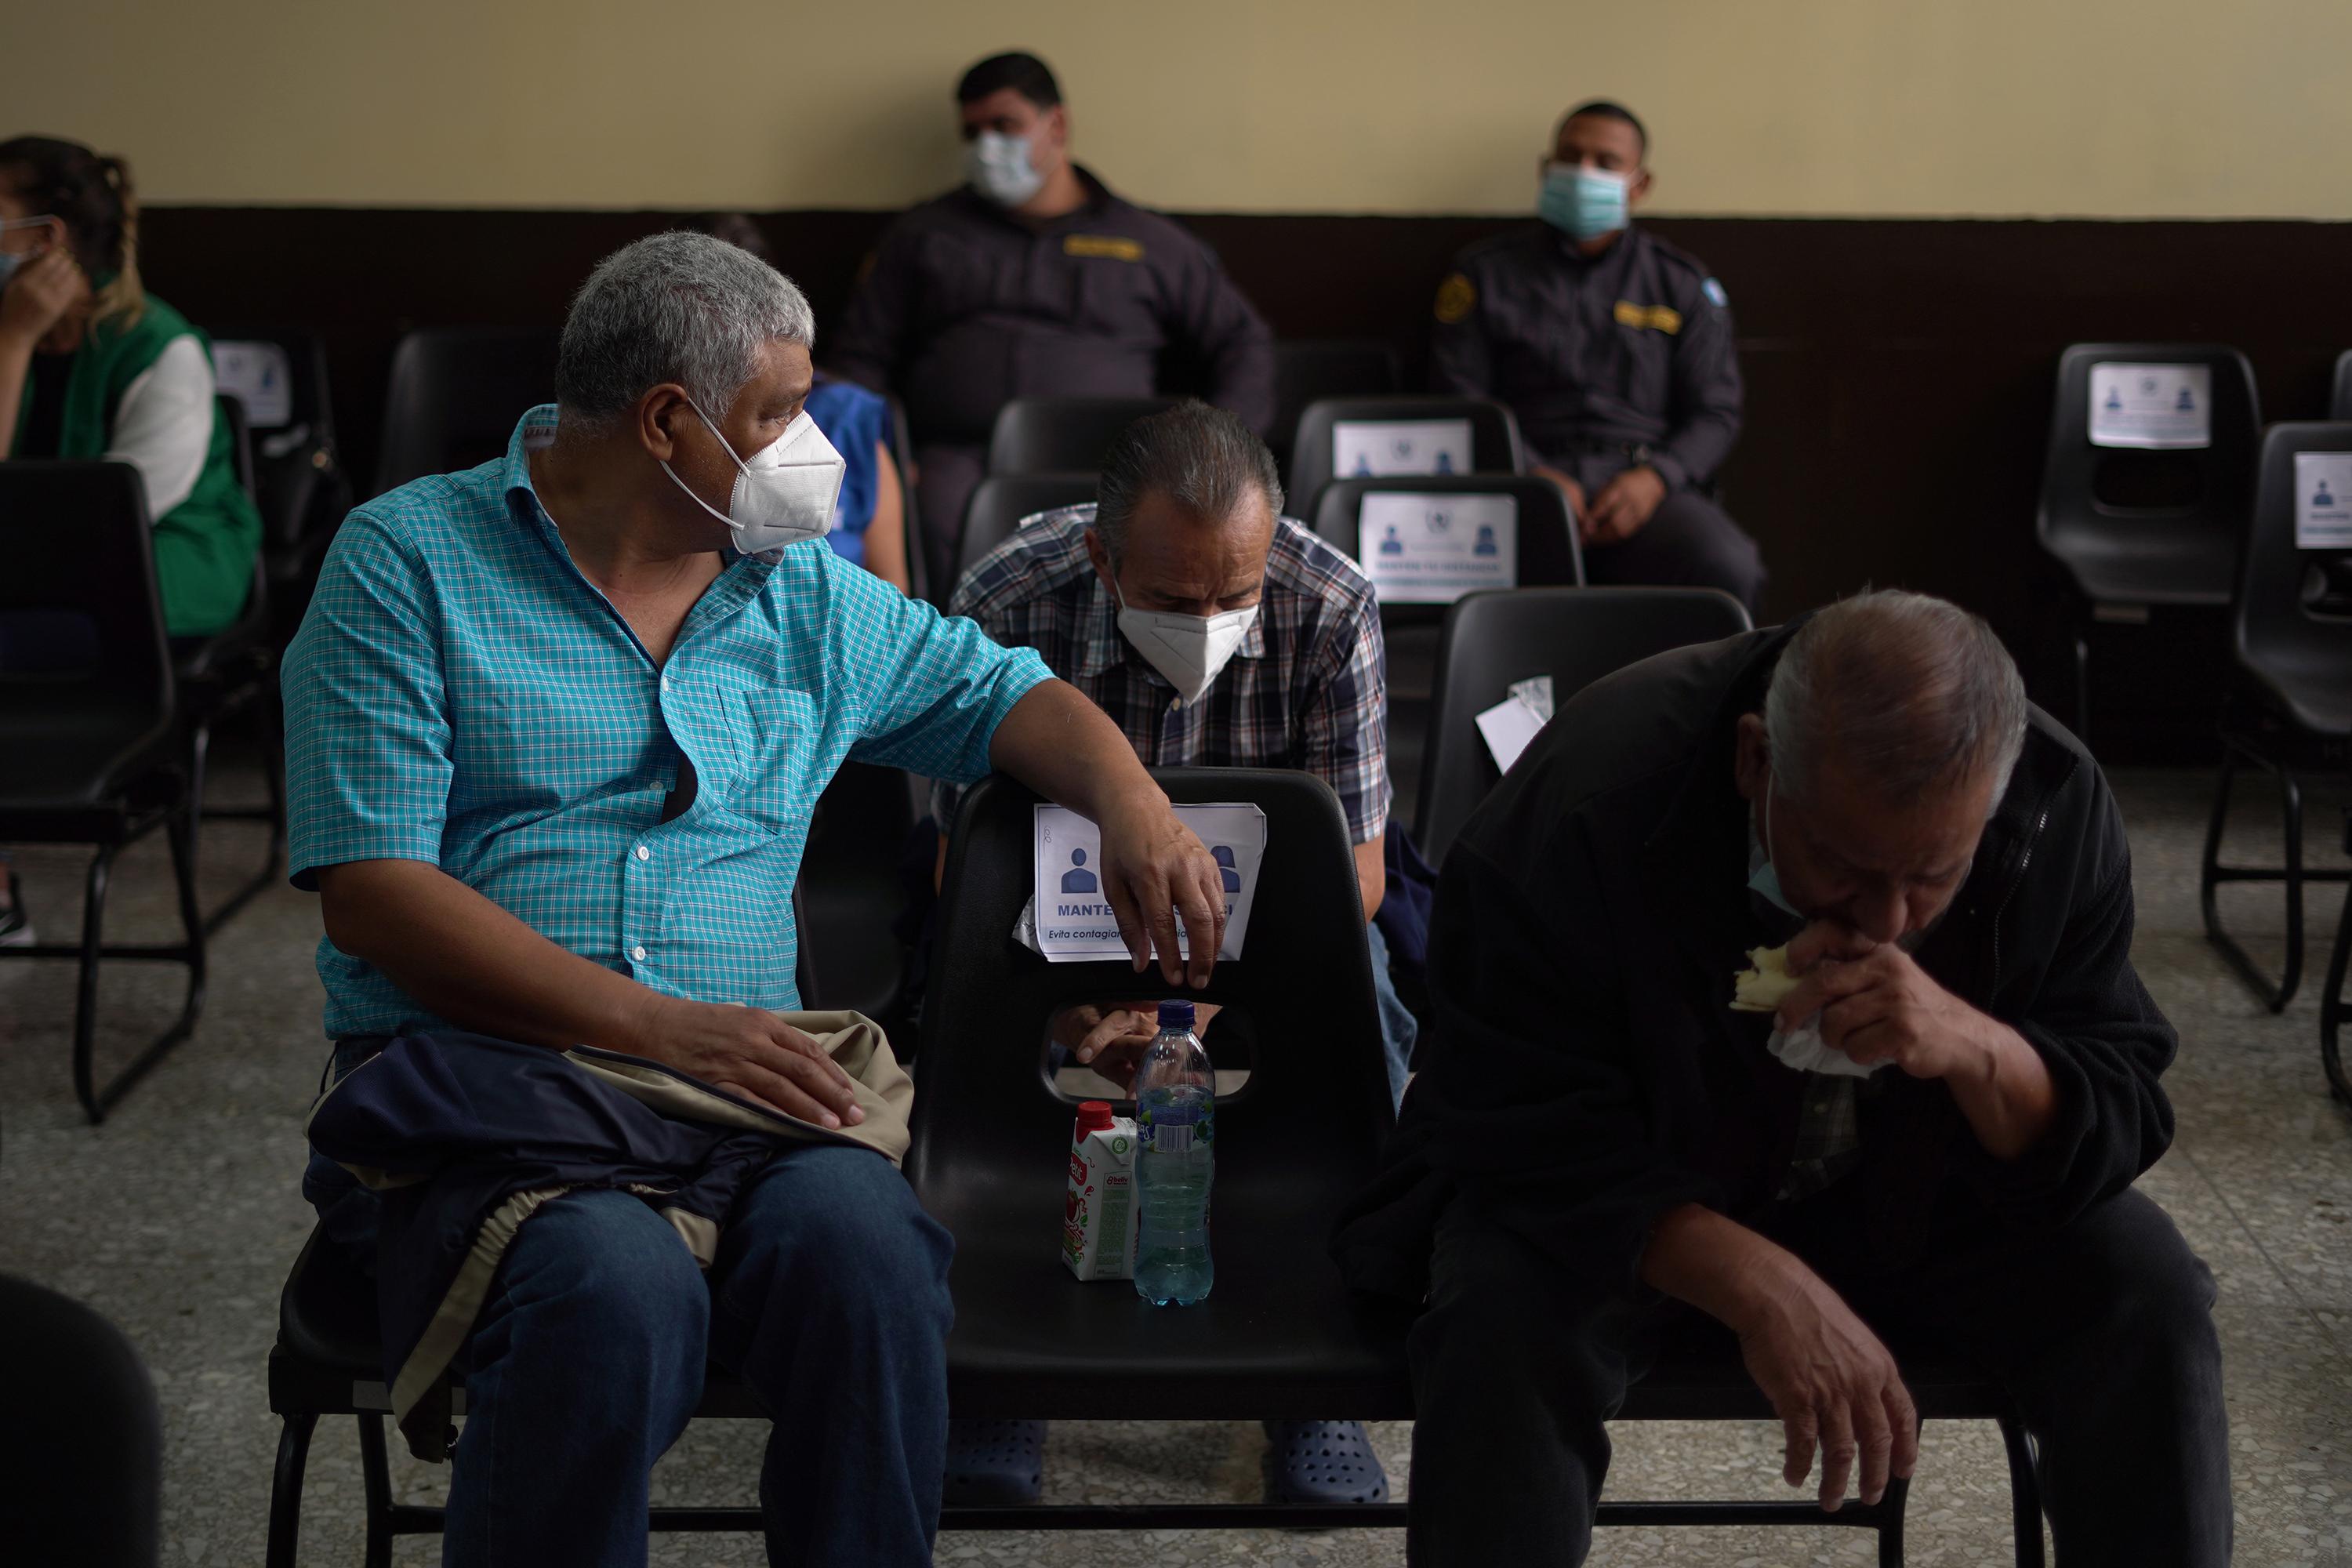 Un Tribunal de Mayor Riesgo de Guatemala presidido por el juez Miguel Ángel Gálvez celebró una audiencia preliminar el 7 de junio de 2021 contra más de una docena de militares y policías retirados por la presunta tortura, desaparición forzada y asesinato de al menos 195 disidentes políticos incluidos en secreto en una lista negra del Ejército entre 1983 y 1985. El caso se conoce como 